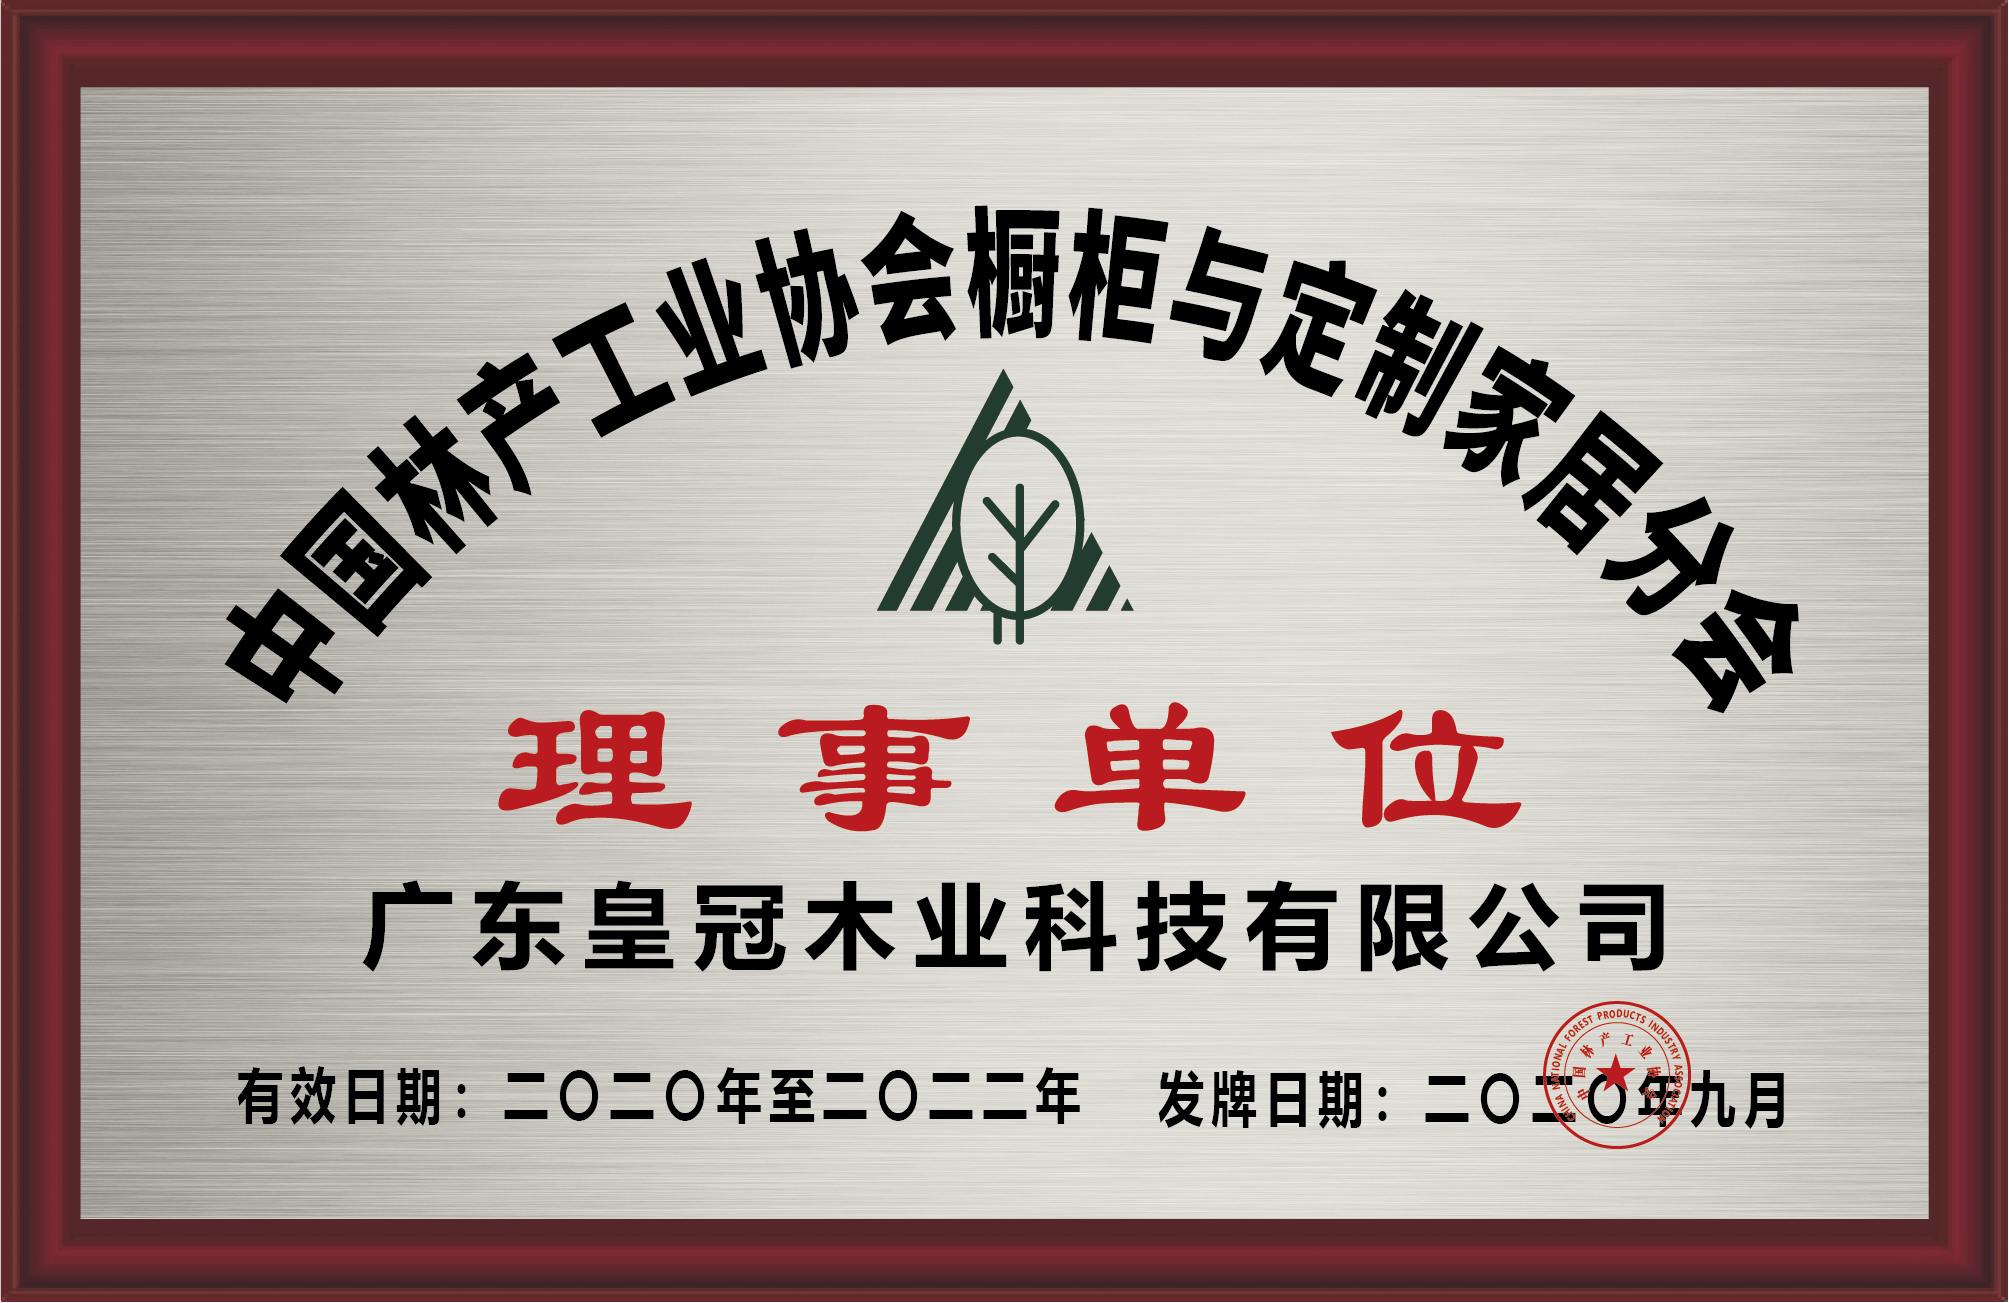 中国林产工业协会橱柜与定制家居分会理事单位